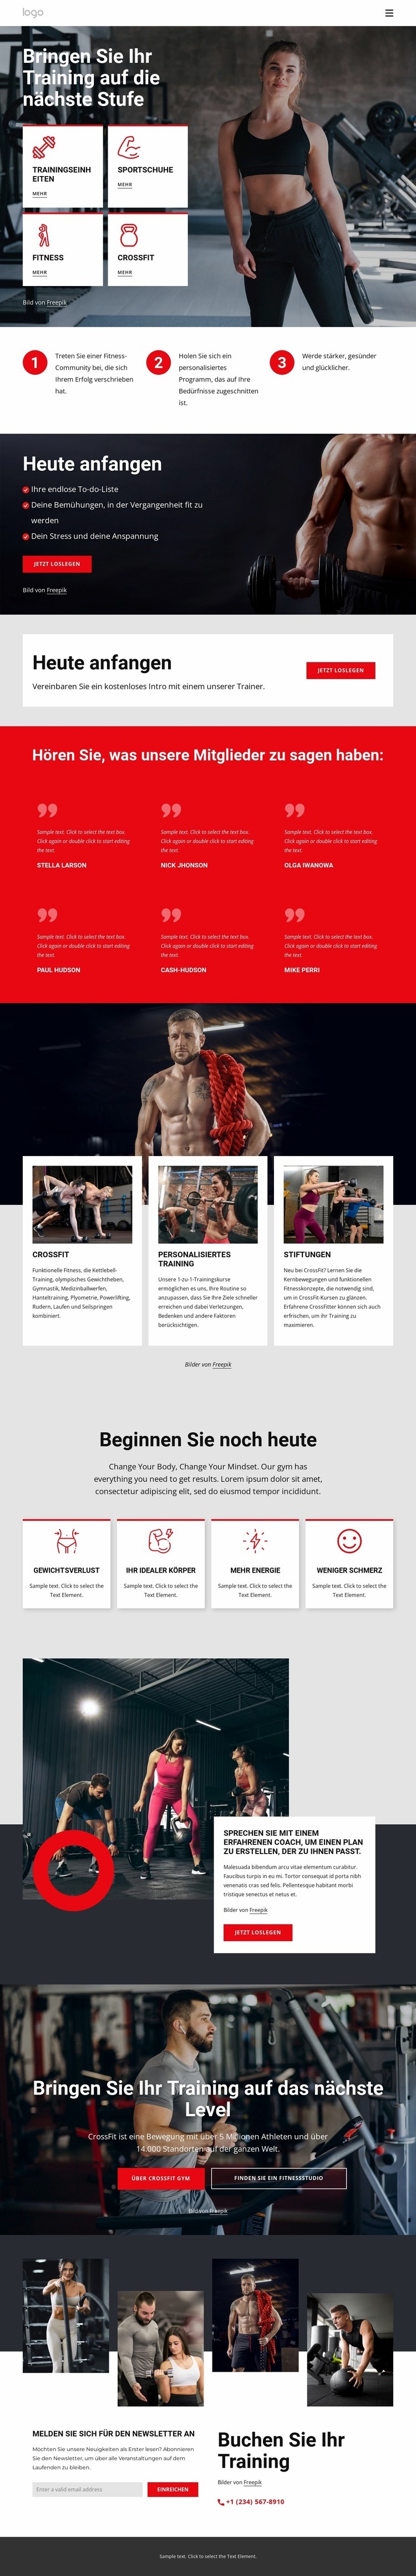 Crossfit-Trainingsgemeinschaft Website design